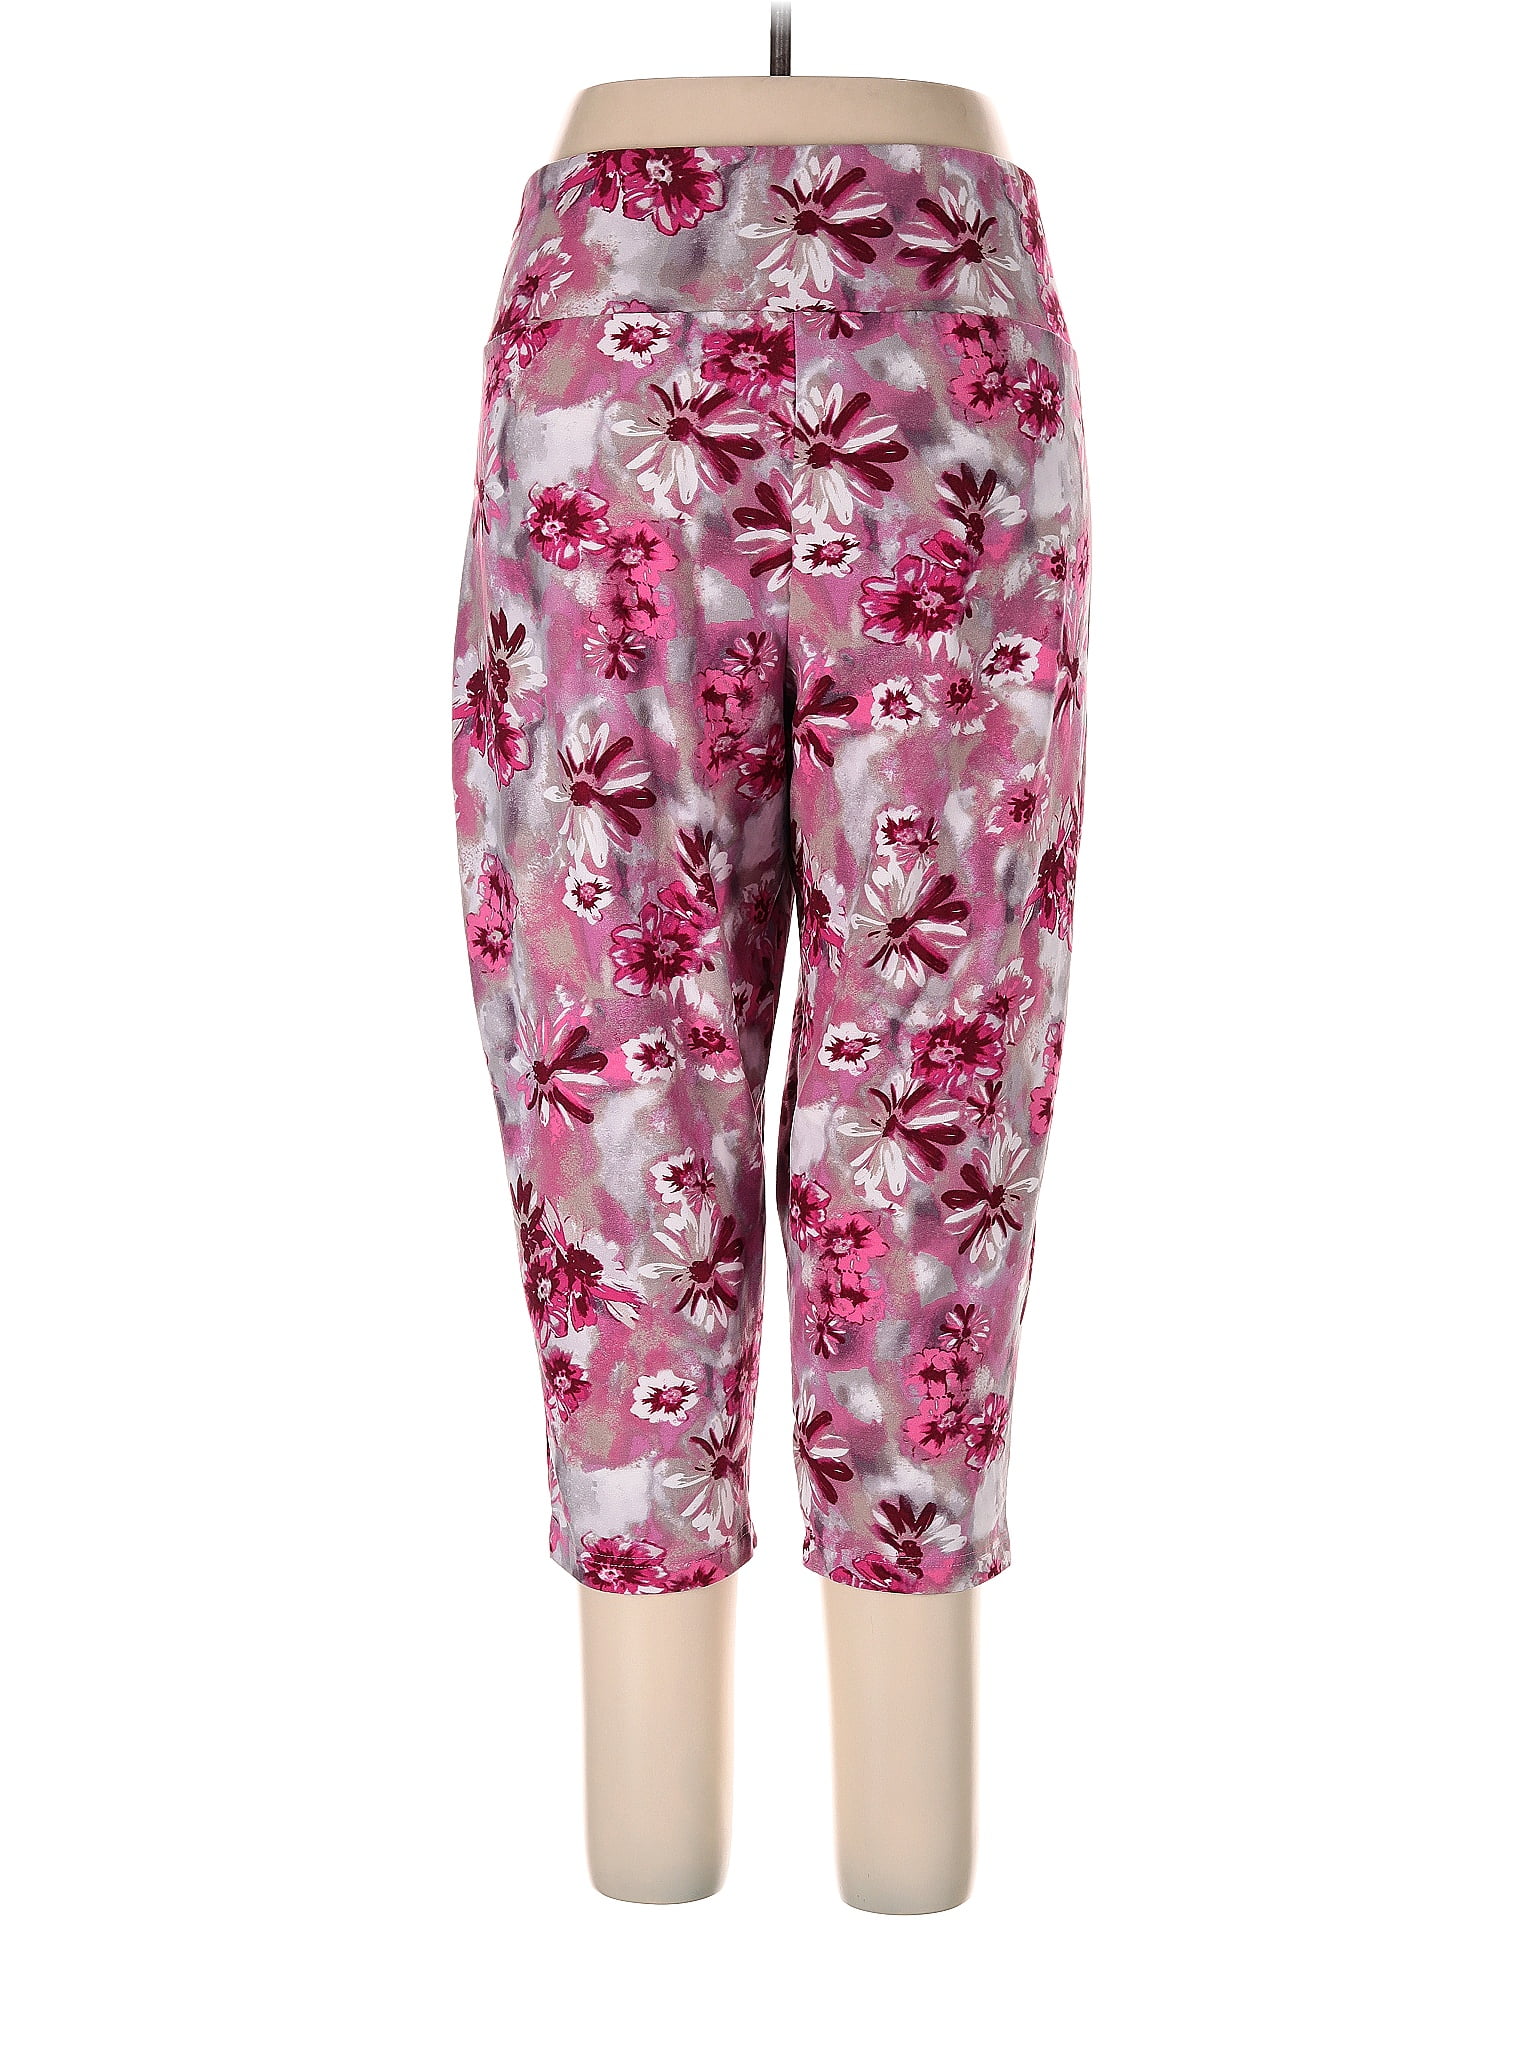 Terra Ski Pants Sakura Pink - Women's